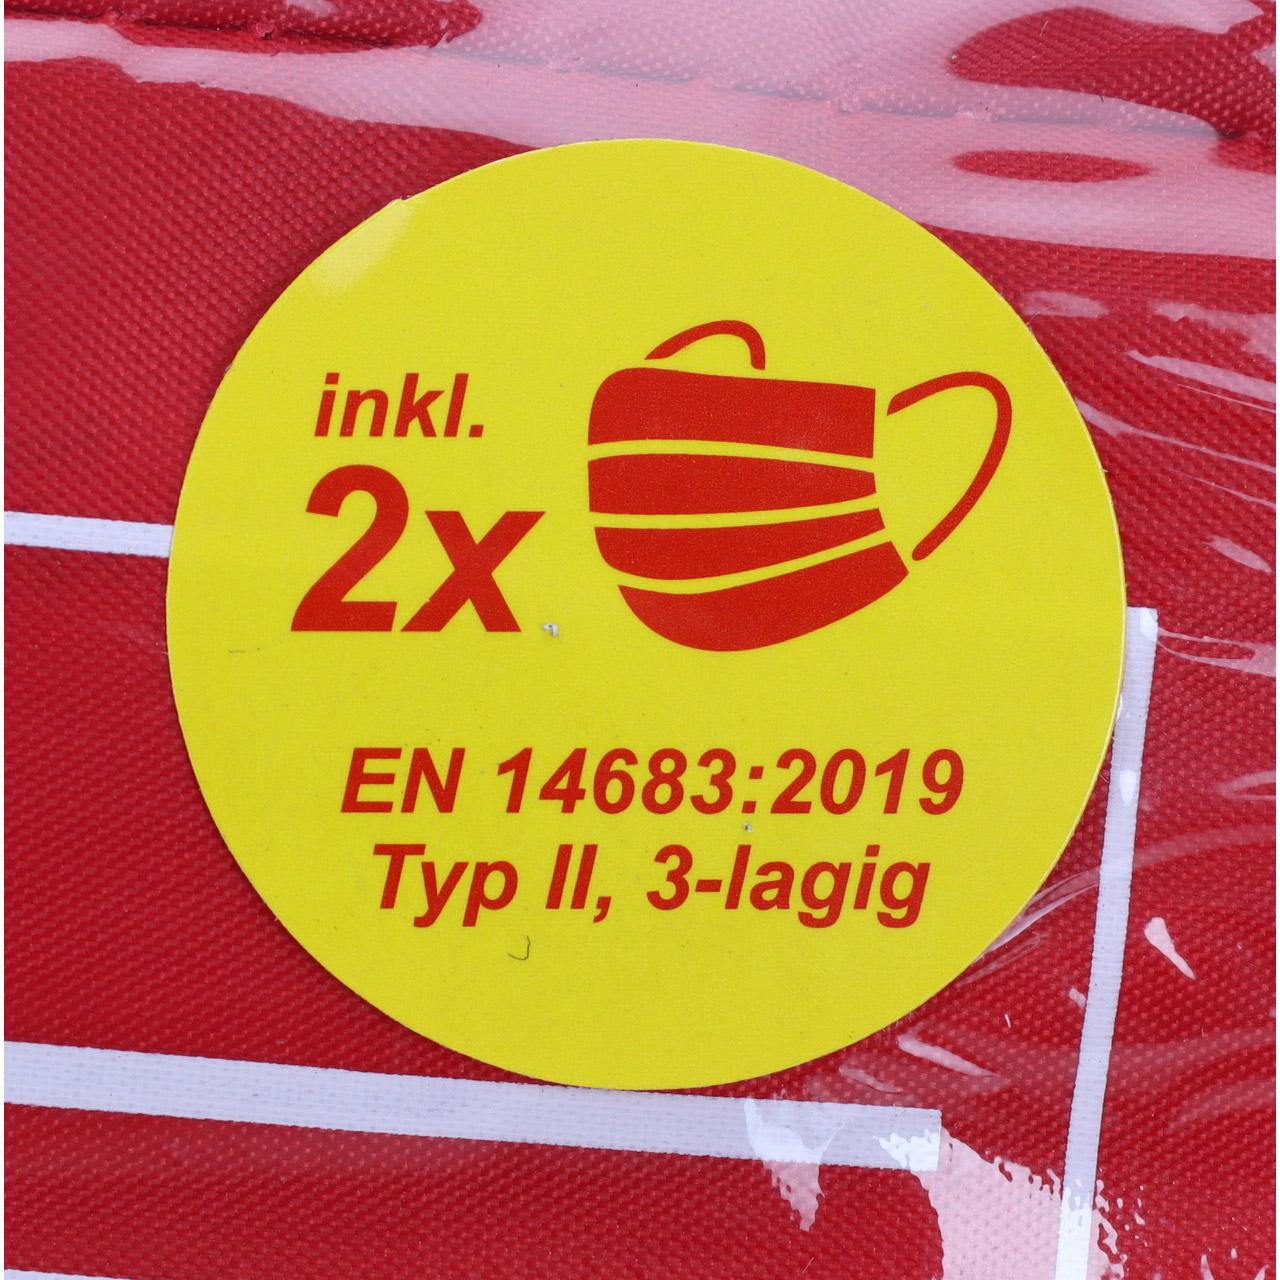 3x AUTO PKW Verbandtasche Verbandkasten Erste-Hilfe DIN13164-2022 (MHD 10.2027)